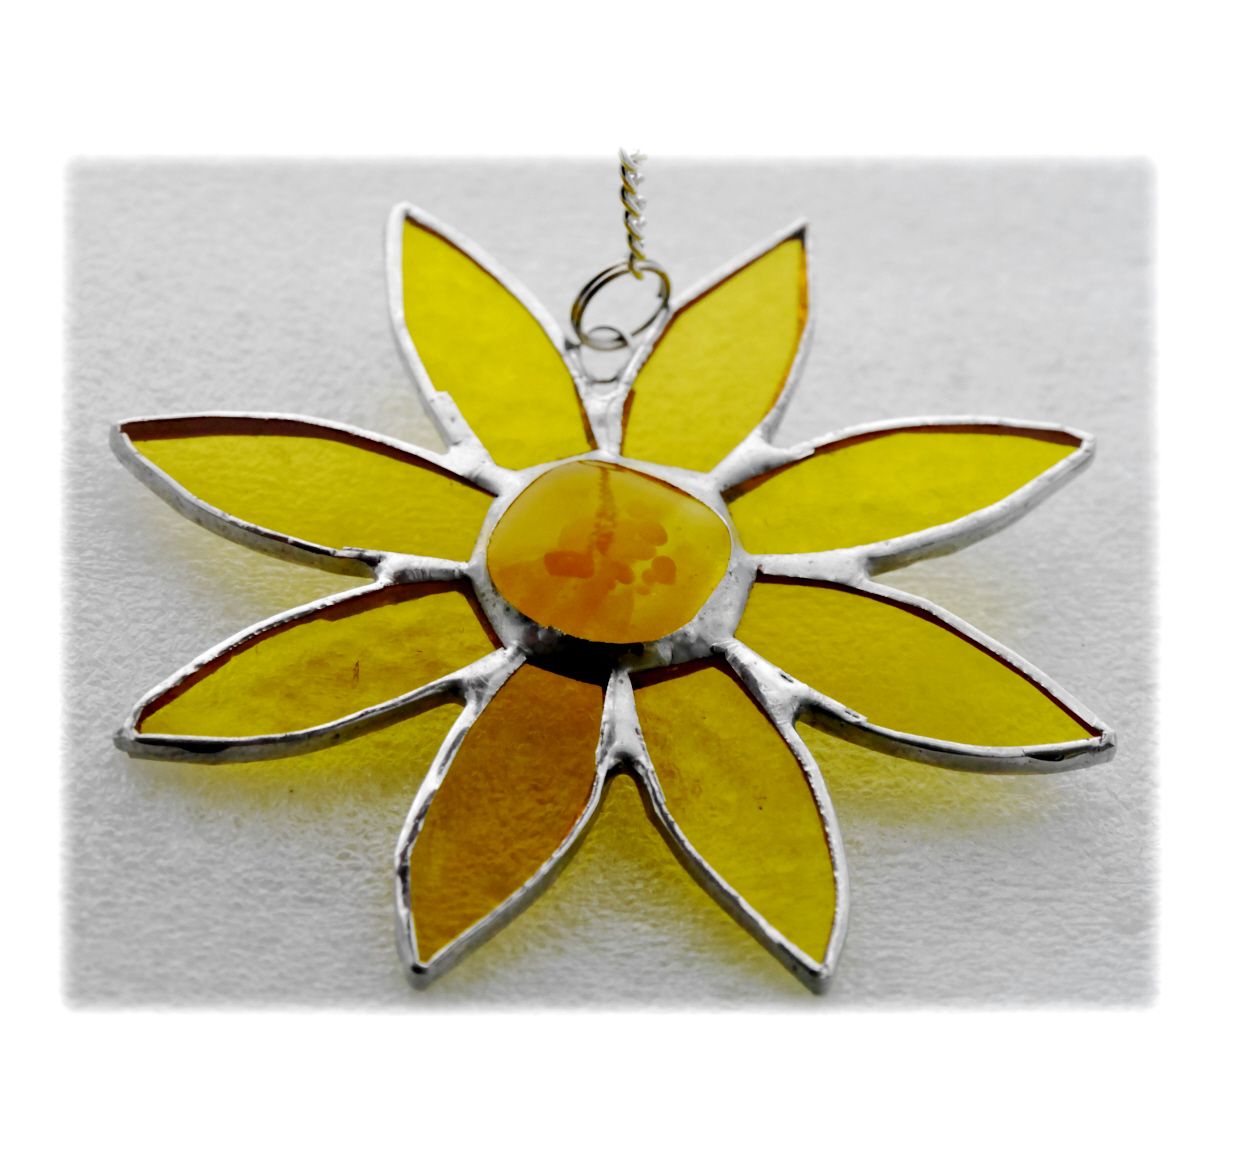 YELLOW Sunflower 045 #1812 FREE 10.00